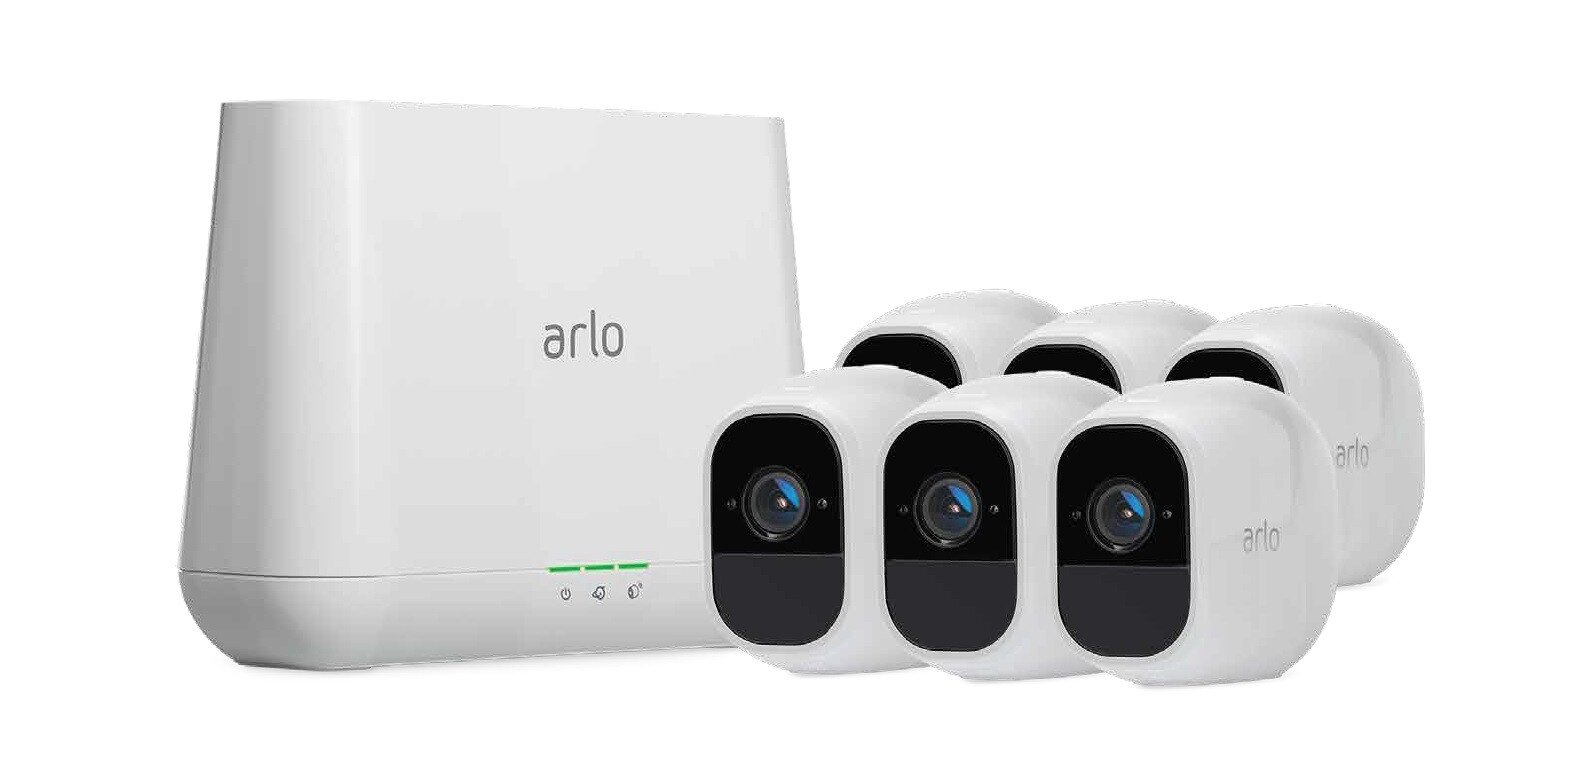 Buy Arlo Pro 2 Smart Security System with 6 Cameras online in Pakistan Tejar.pk